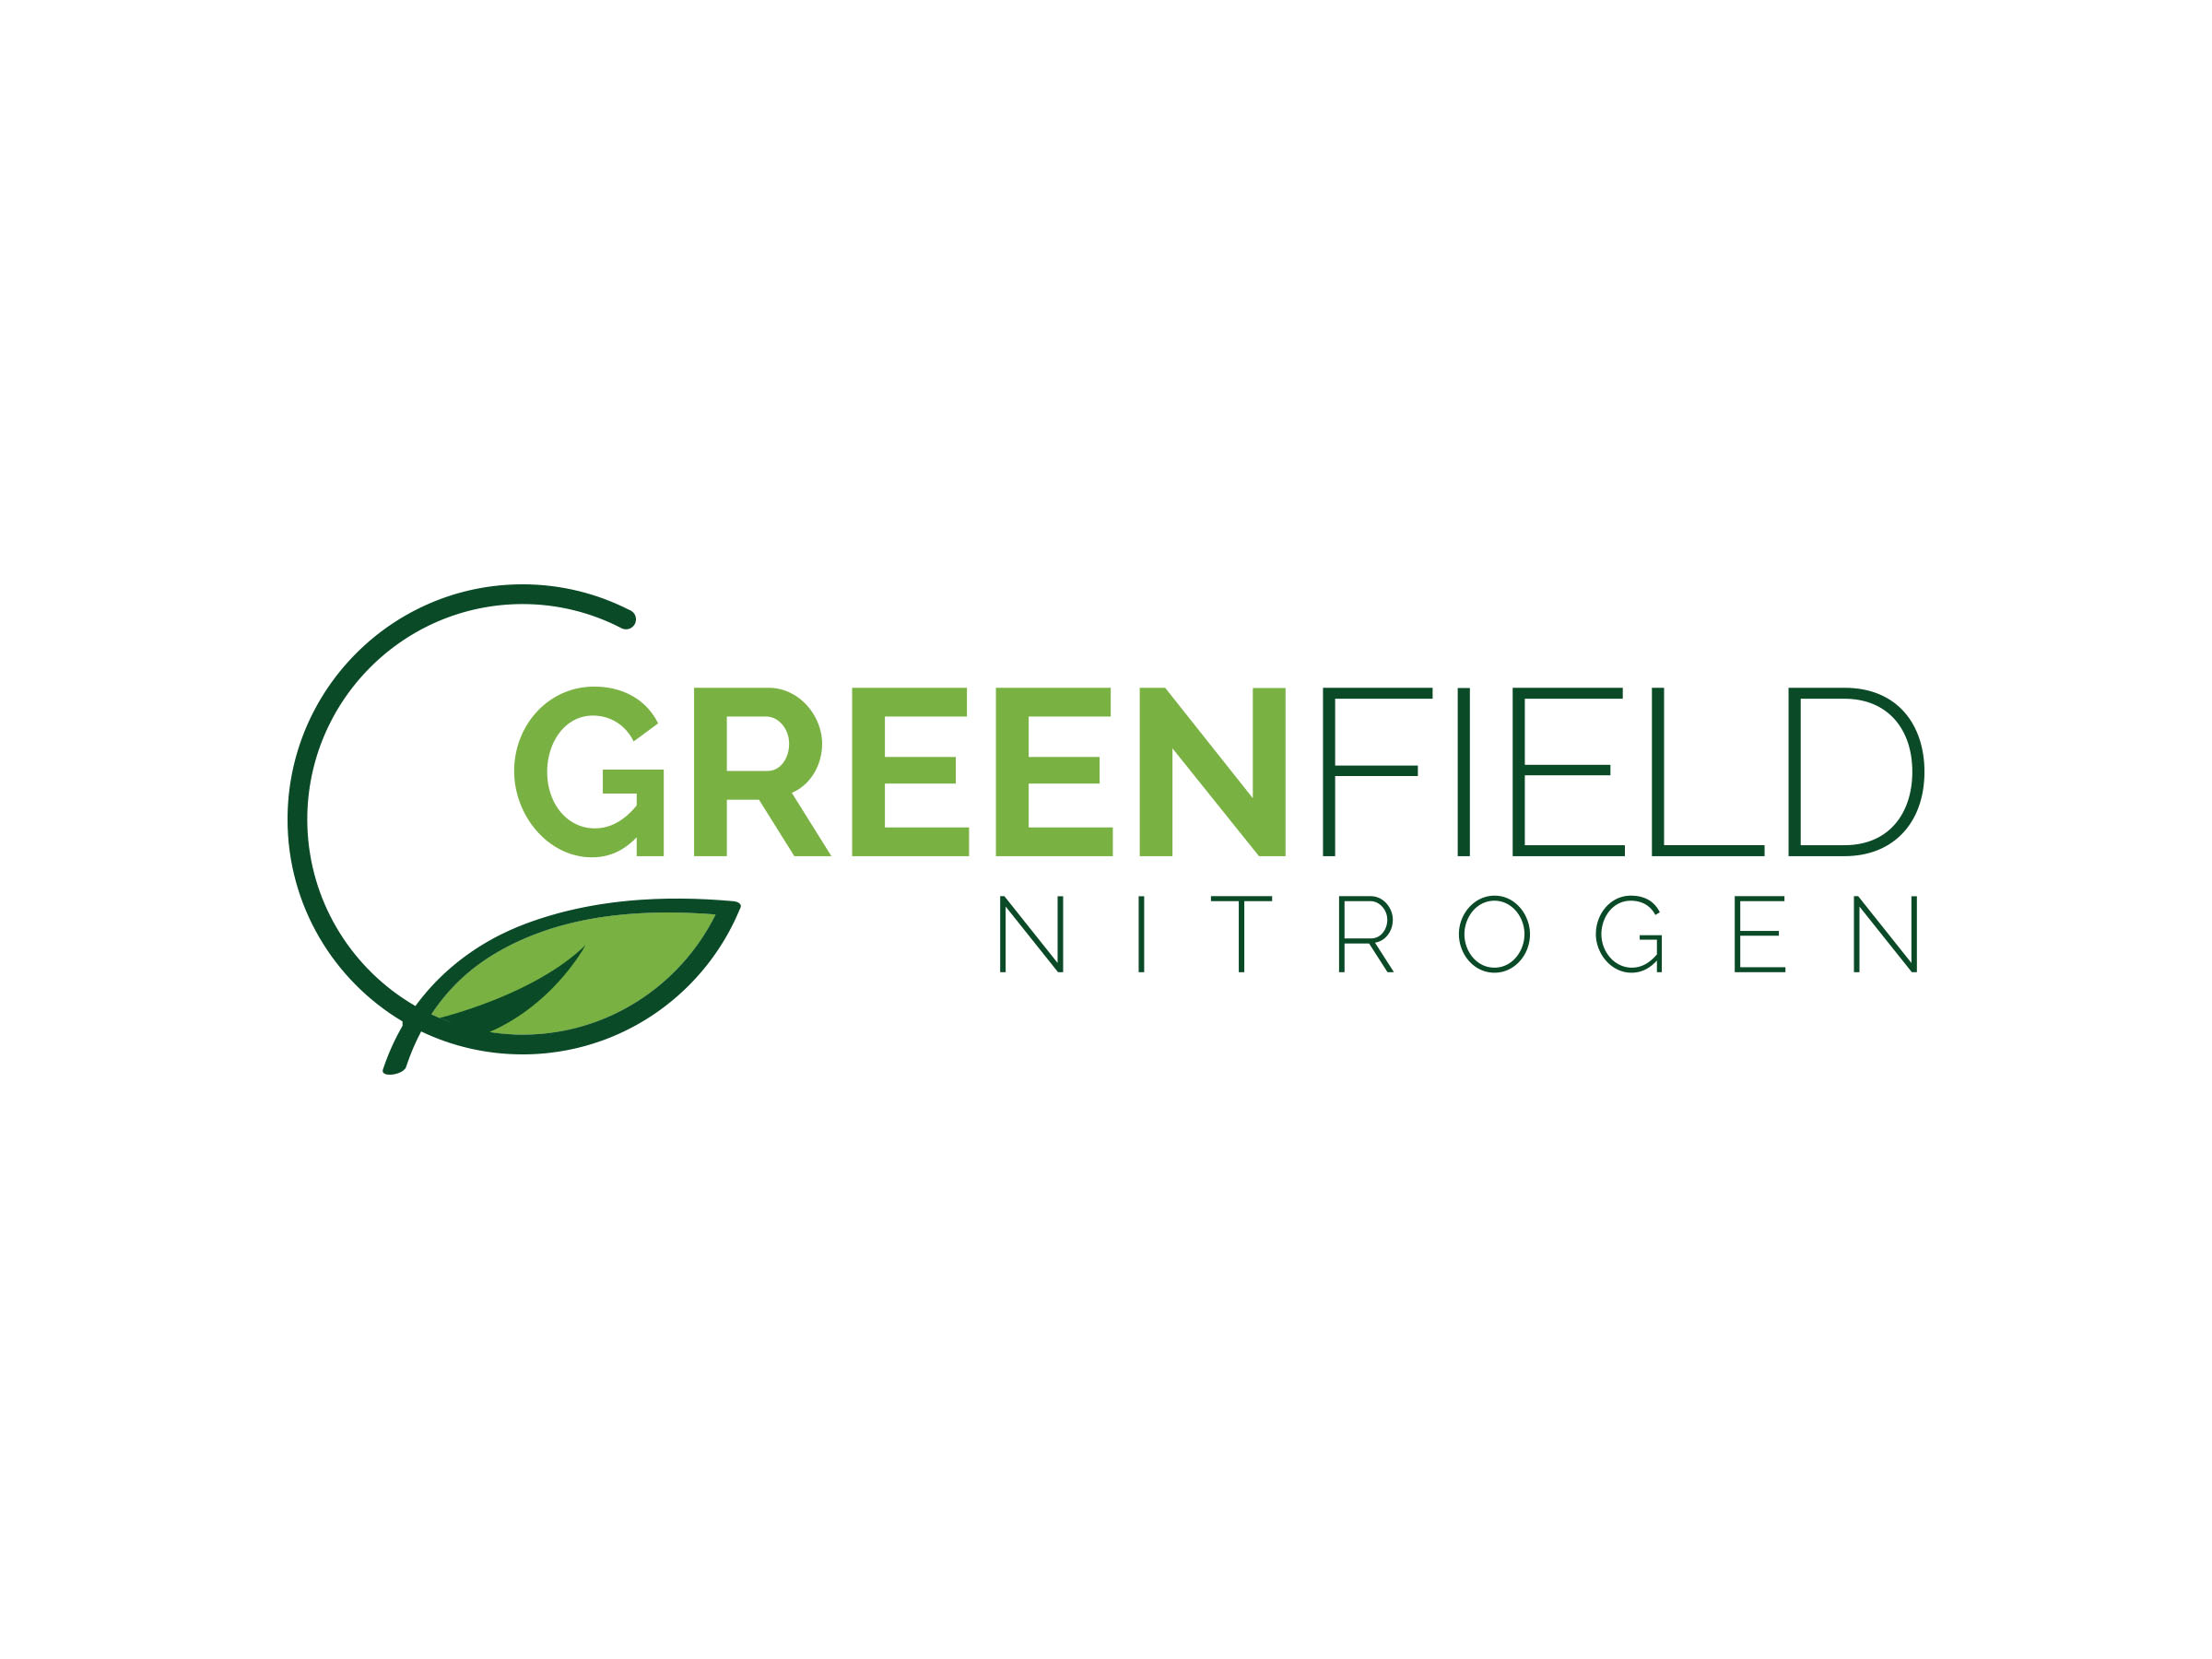 Greenfield Nitrogen